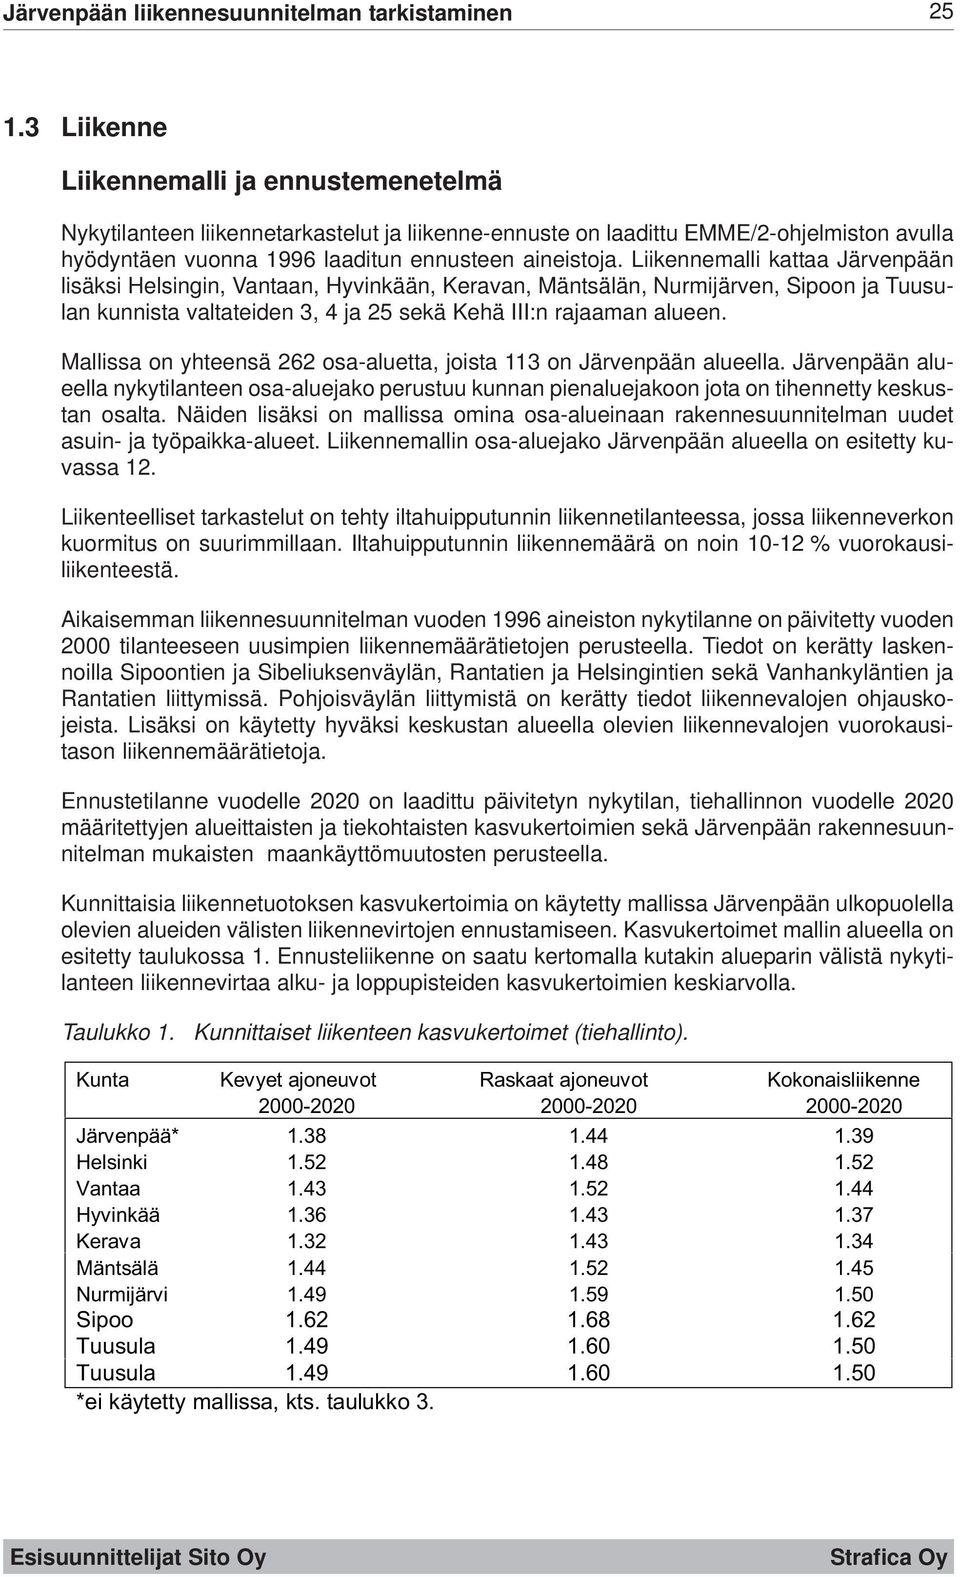 Liikennemalli kattaa Järvenpään lisäksi Helsingin, Vantaan, Hyvinkään, Keravan, Mäntsälän, Nurmijärven, Sipoon ja Tuusulan kunnista valtateiden 3, 4 ja 25 sekä Kehä III:n rajaaman alueen.